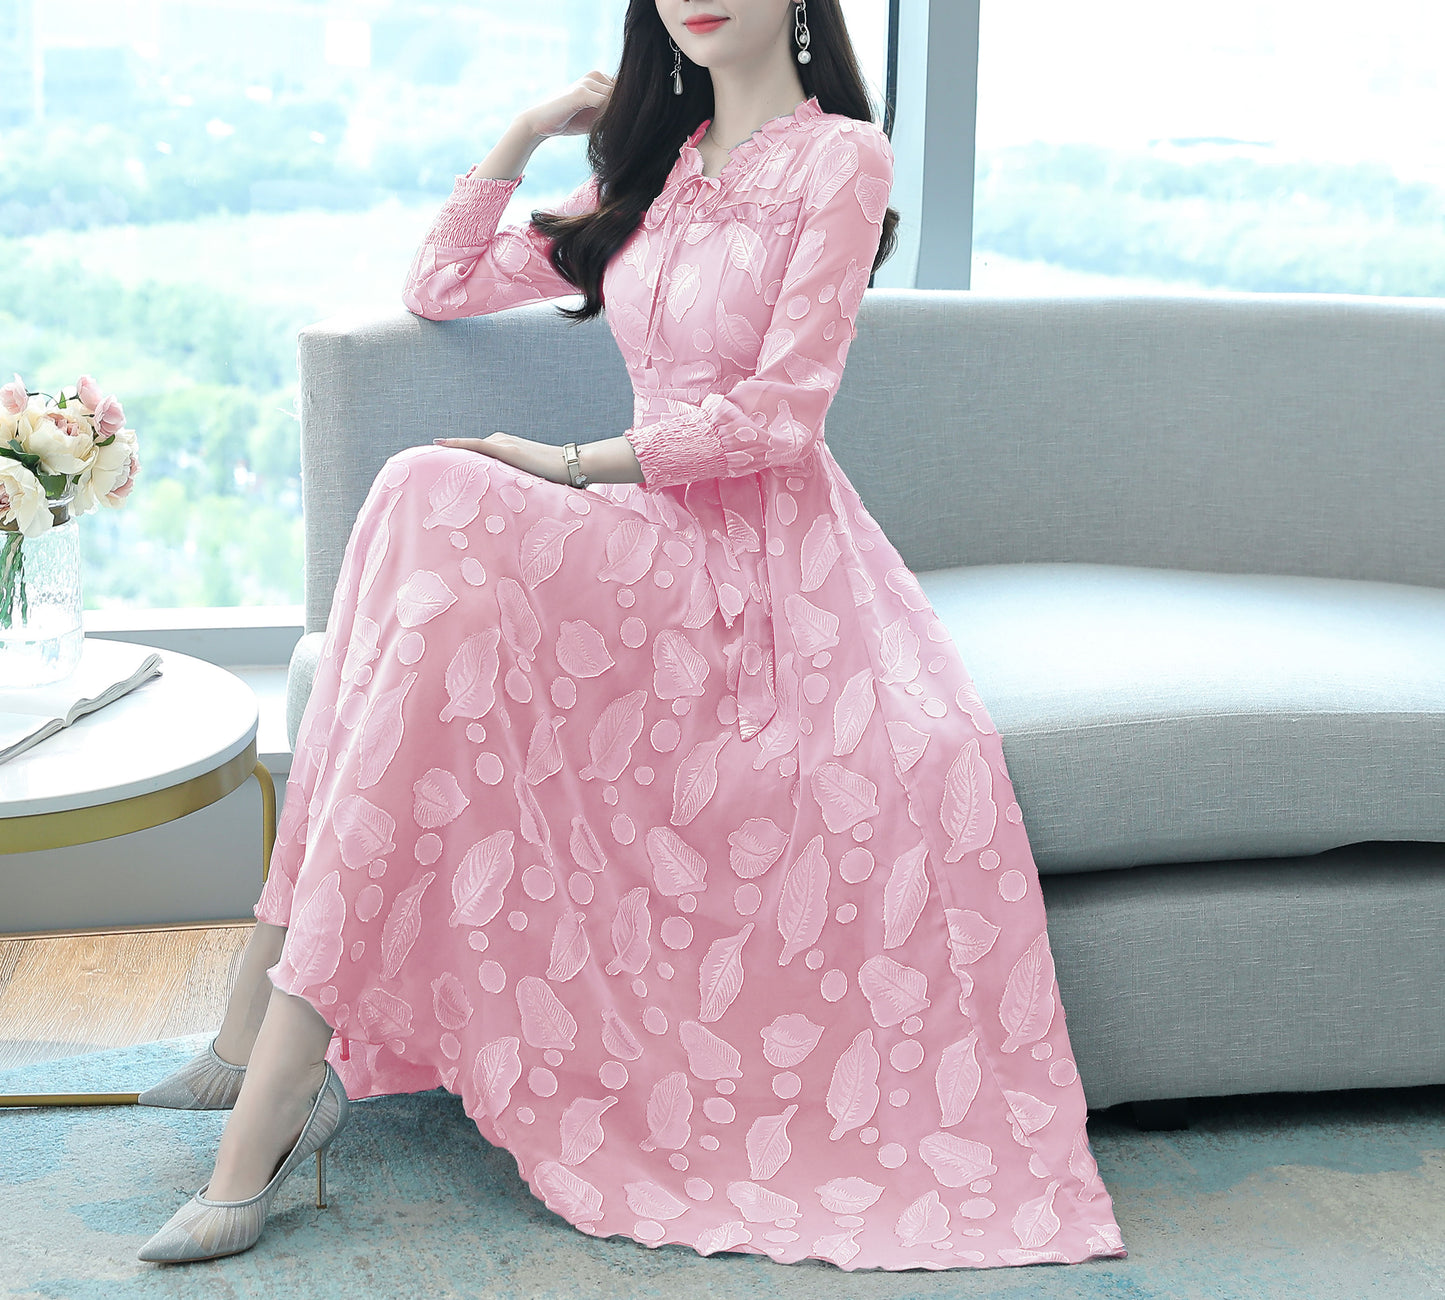 Classic Dress Floral Pattern Maxi Print Dress